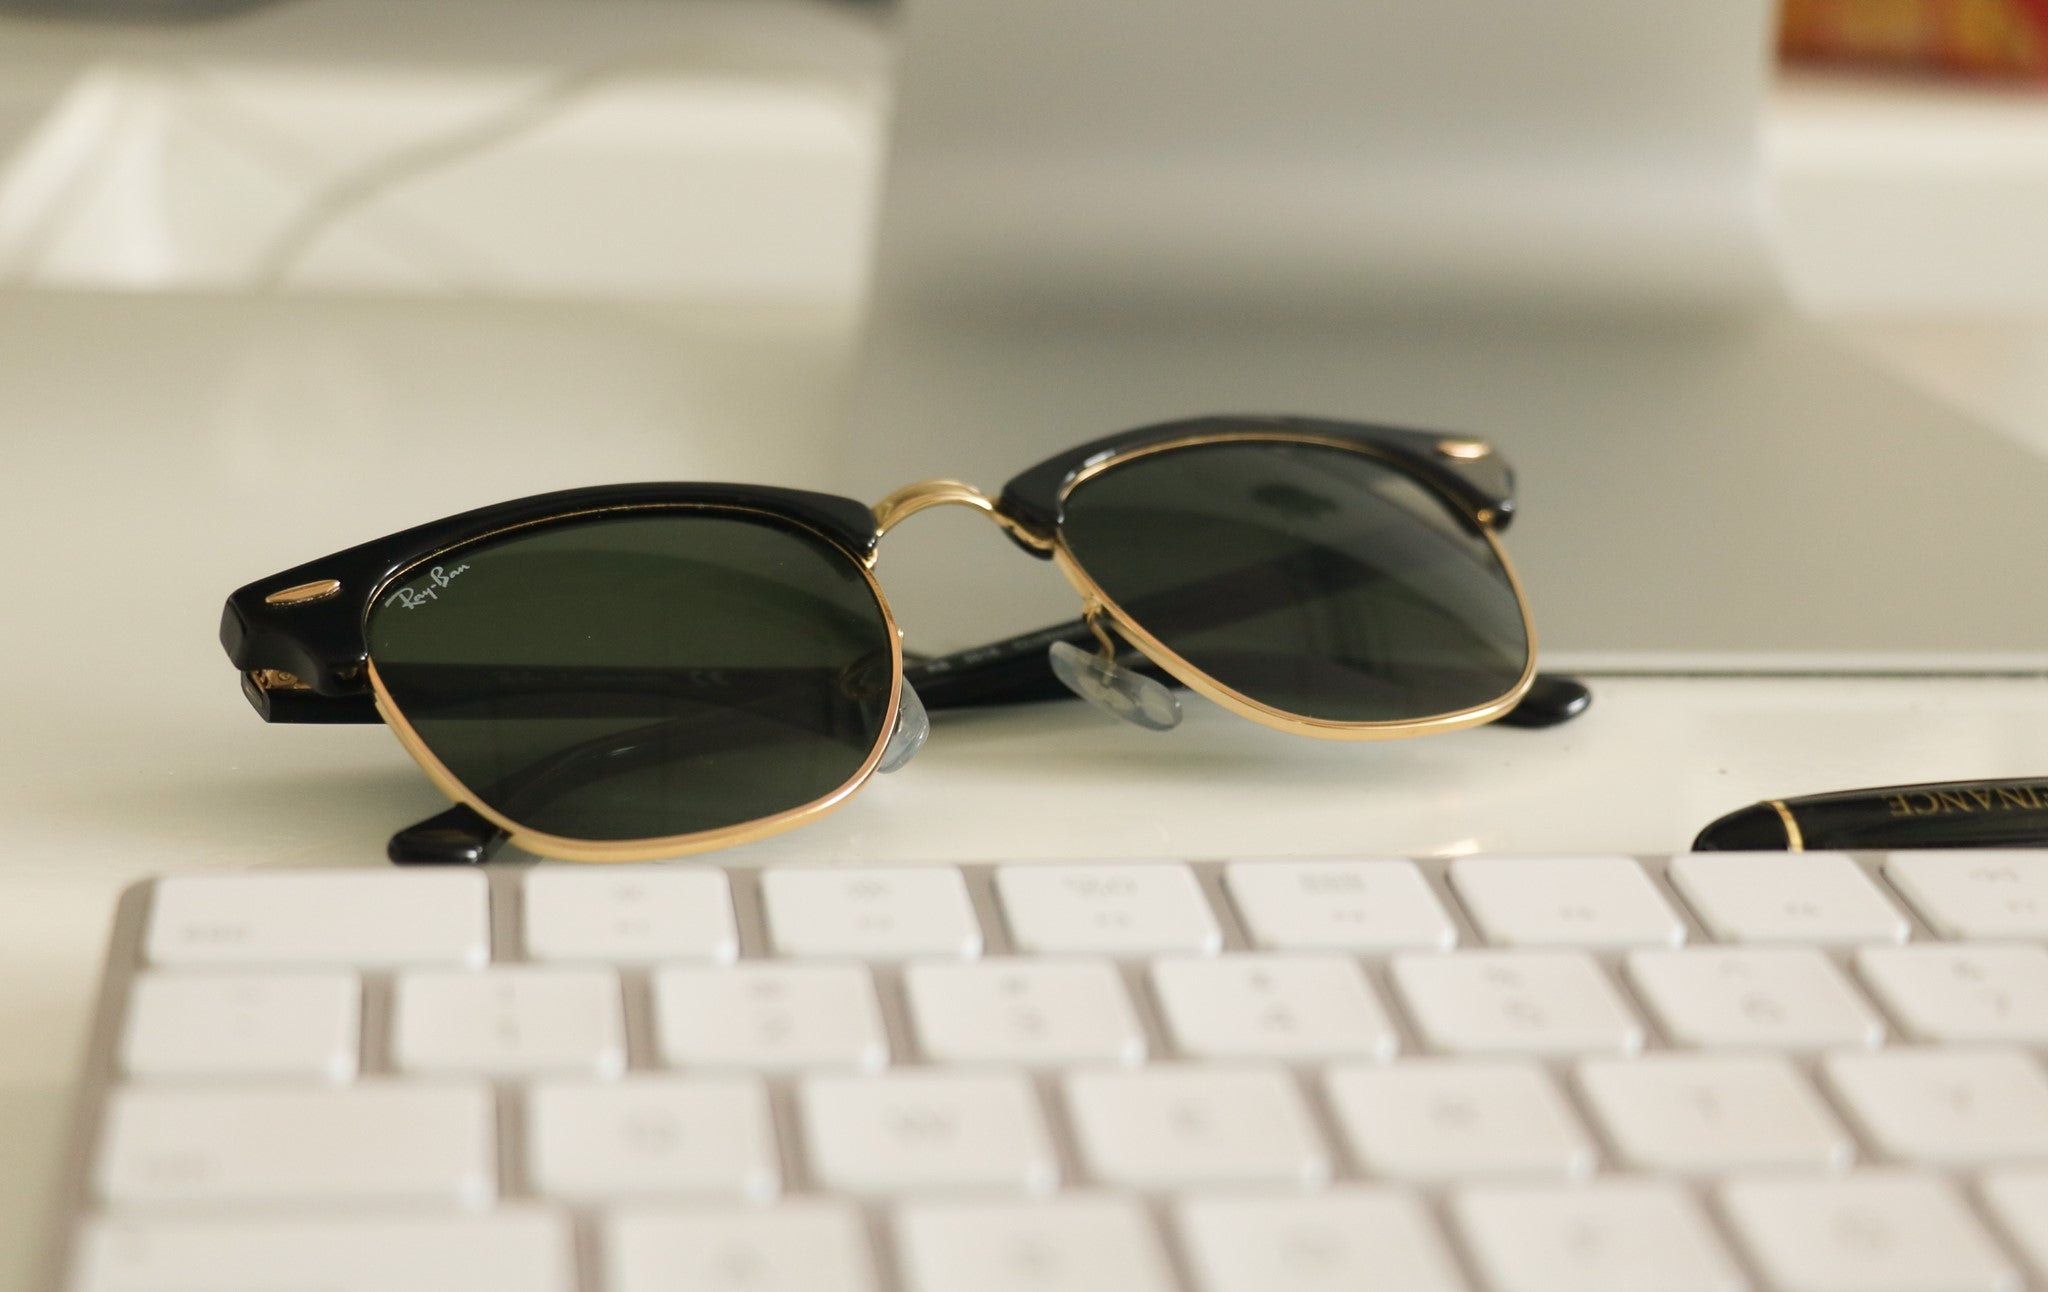 Rayban - Køb solbriller fra Rayban online hos os – Side 8 – Optik